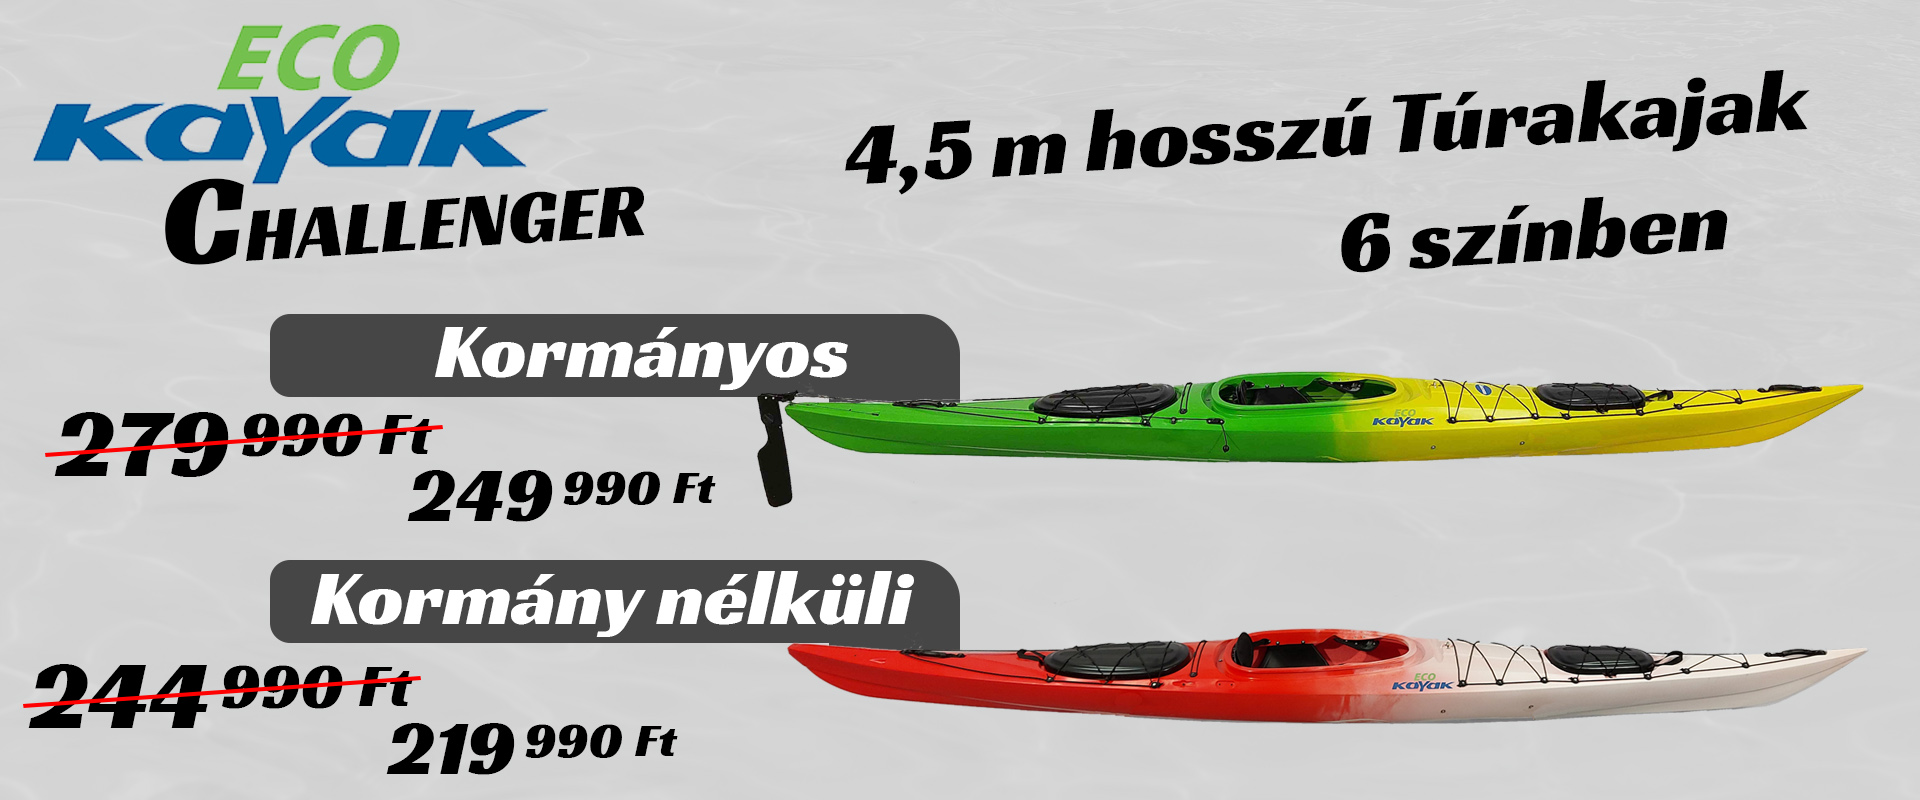 Eco Kayak Challenger